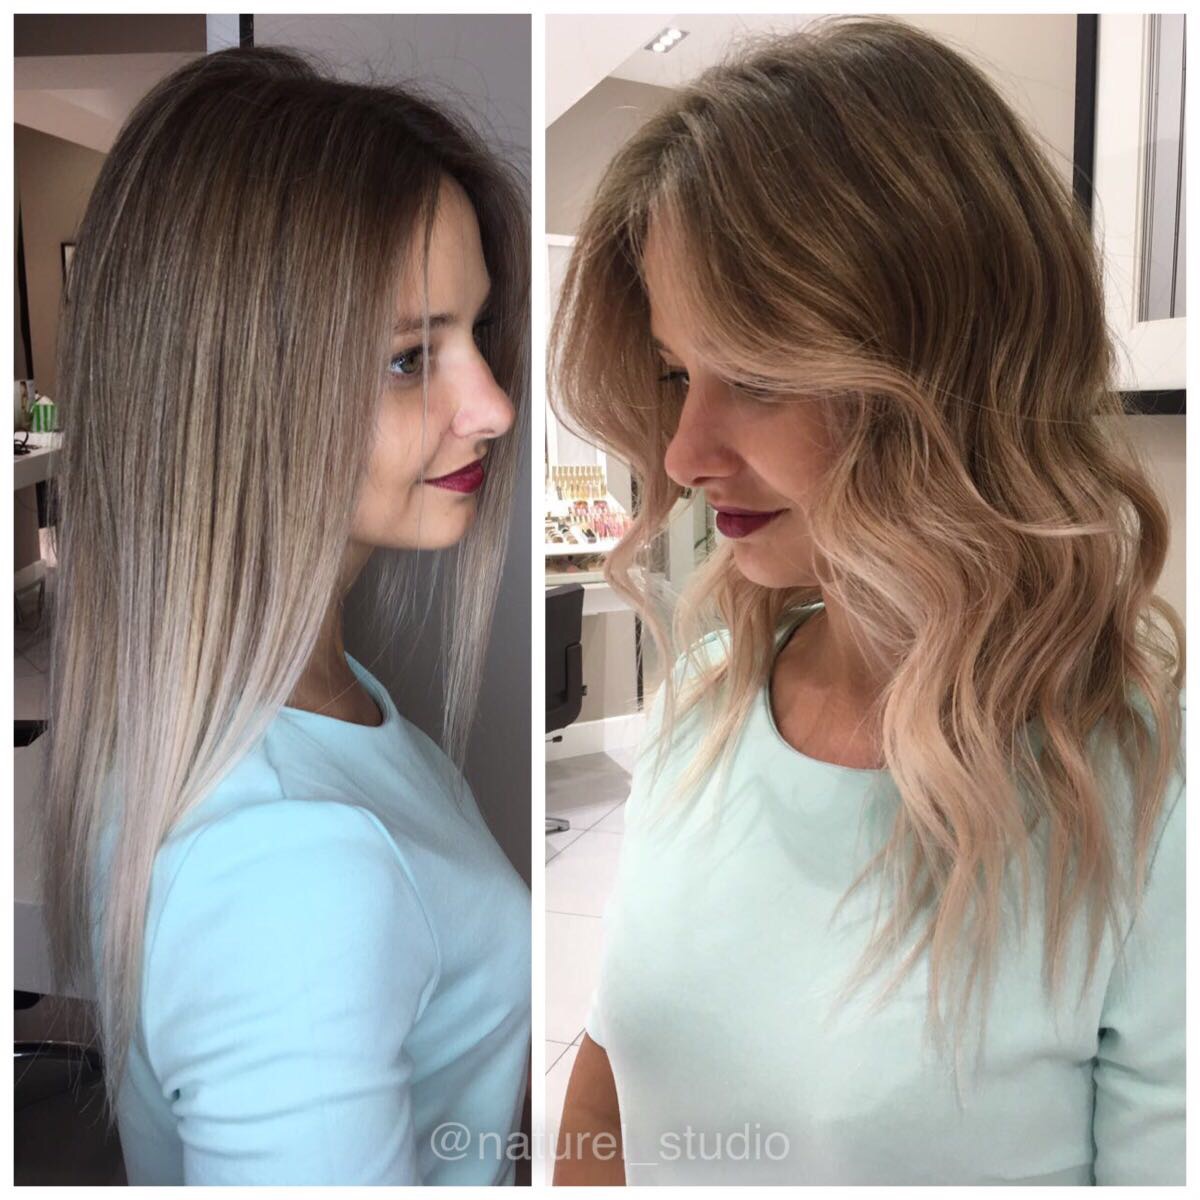 Аир тач на натуральные волосы фото до и после